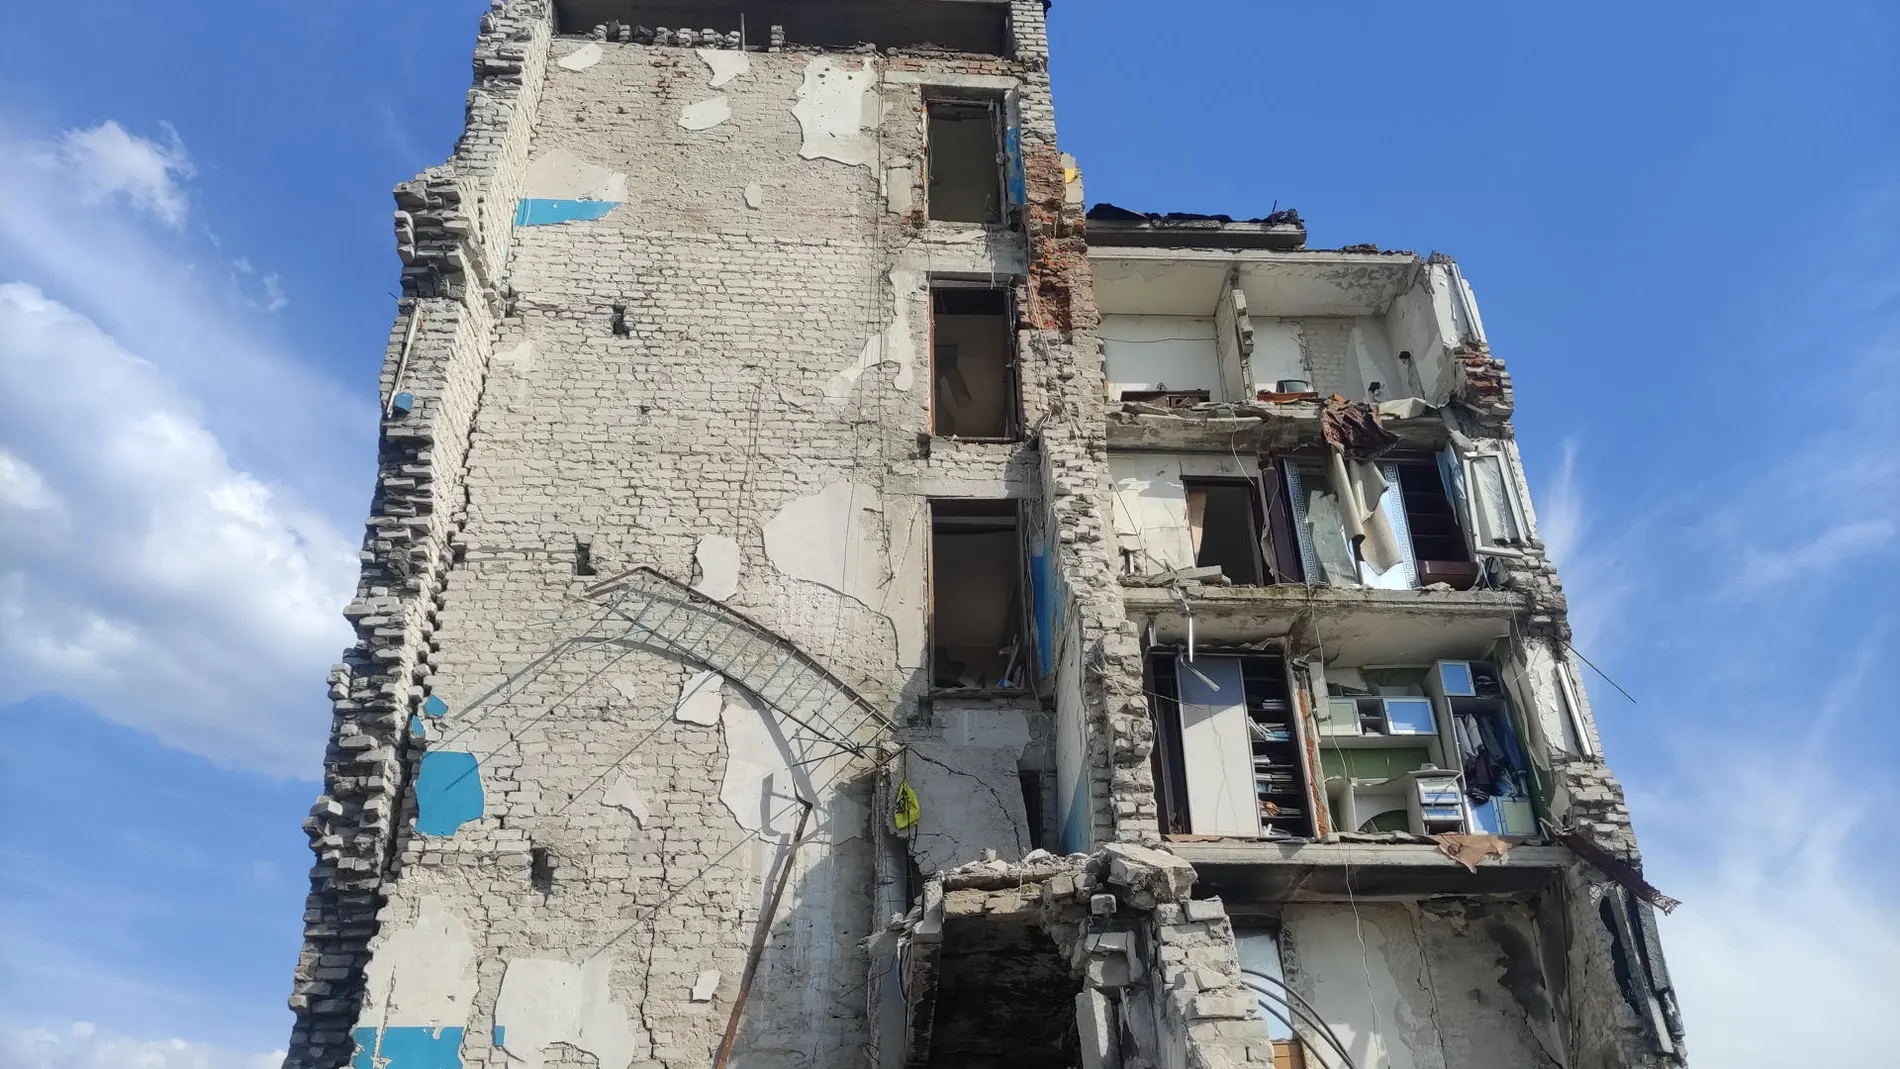  Vista de un bloque de viviendas de Izium, noreste de Ucrania, devastado por una bomba rusa antes de la ocupación de la ciudad.